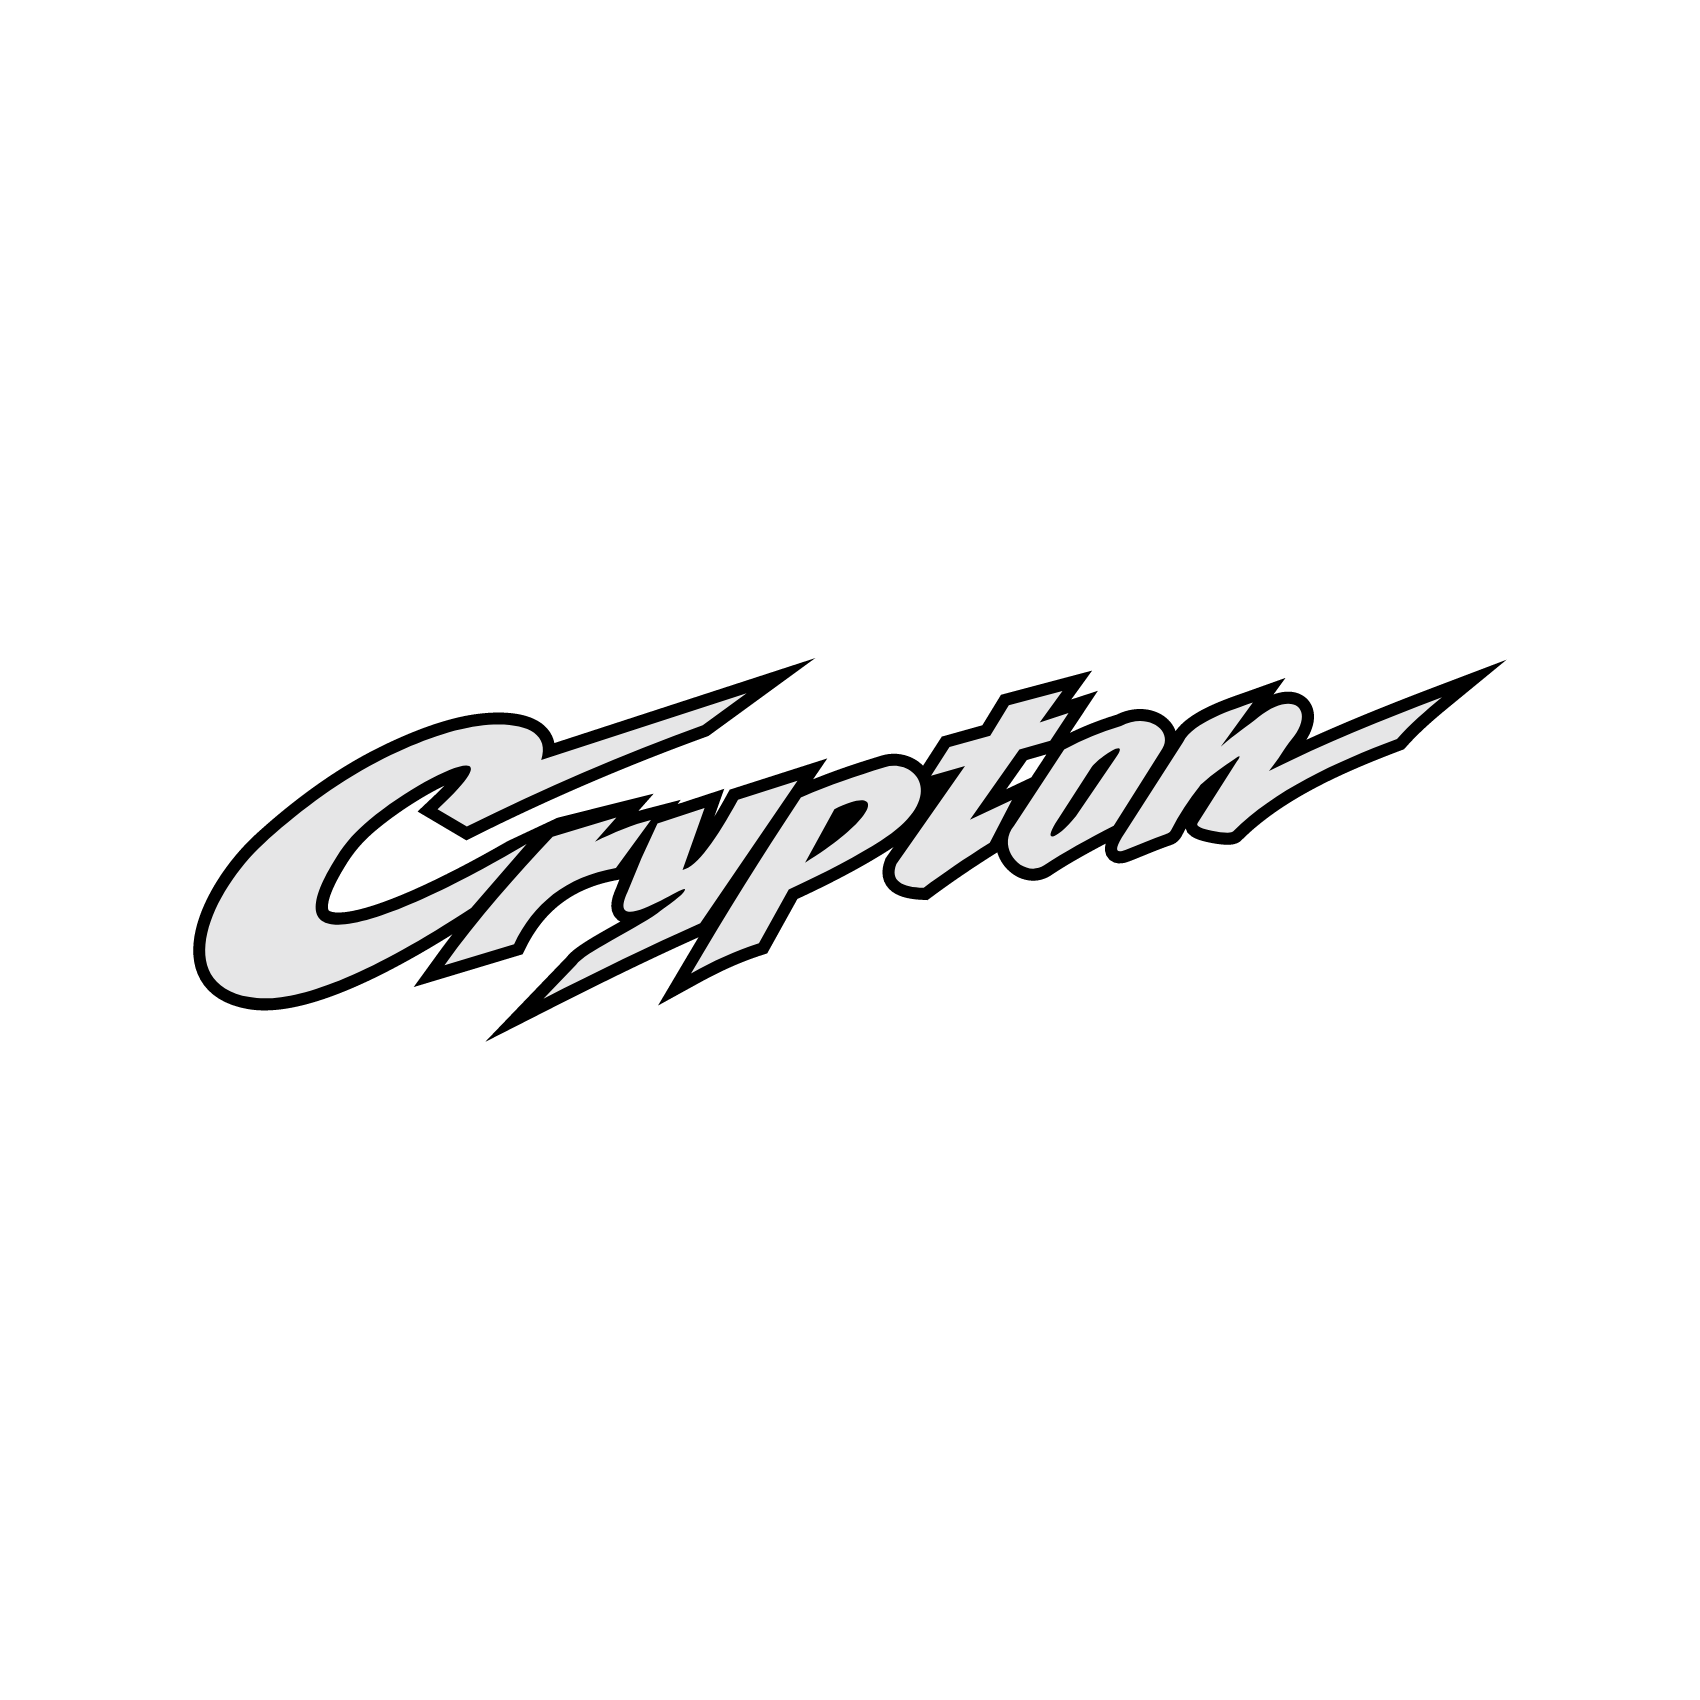 crypton com